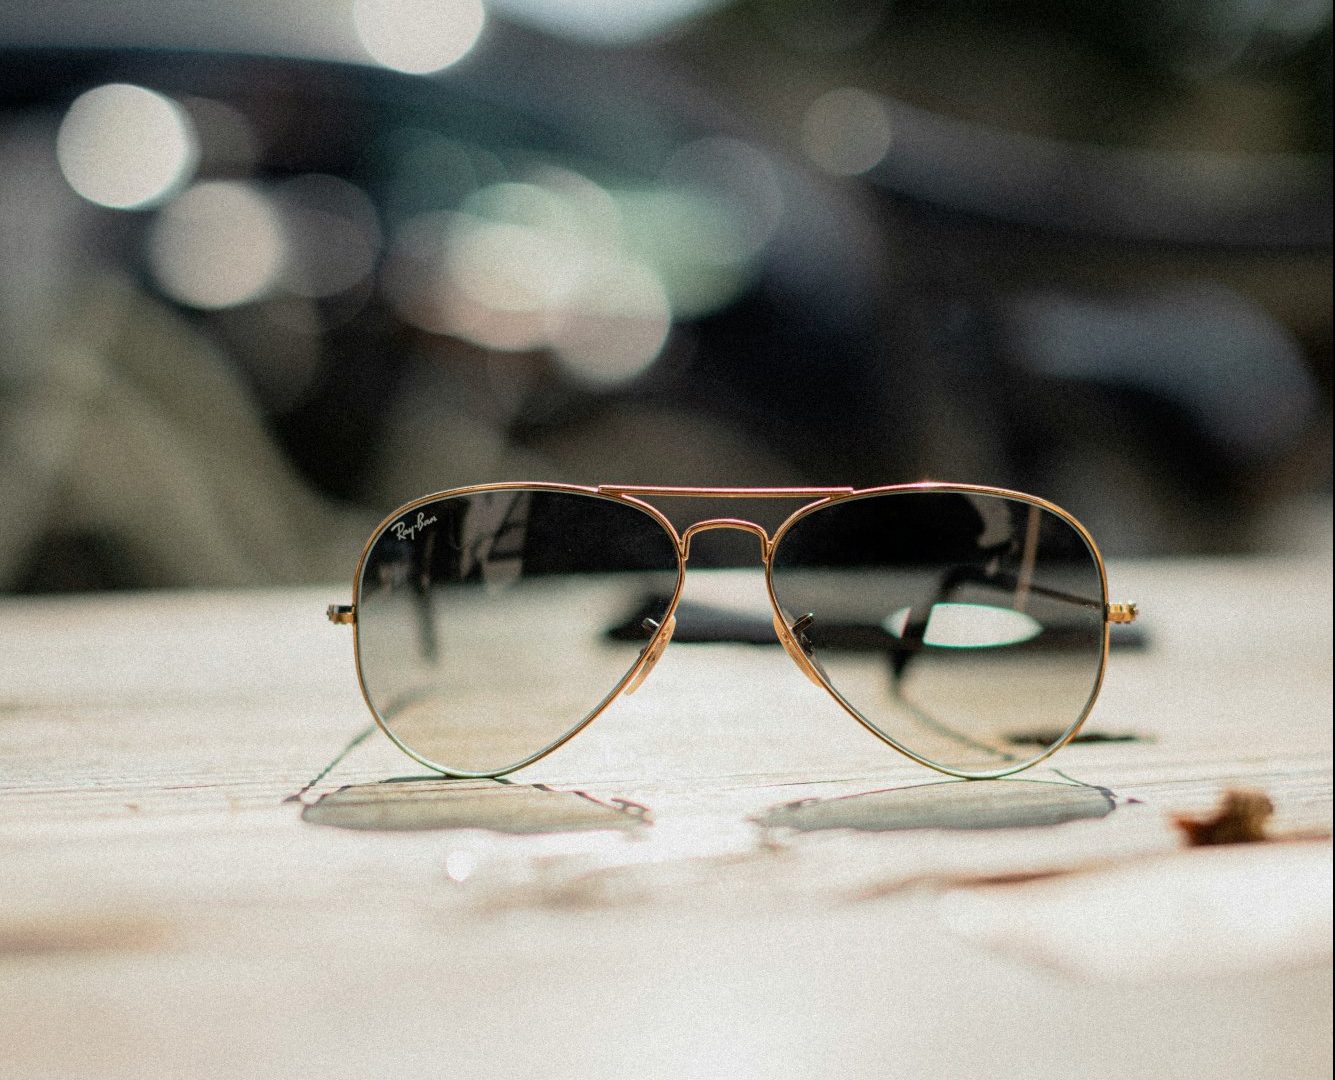 Γιατί δεν πρέπει να αφήνετε τα γυαλιά ηλίου μέσα στο αυτοκίνητο – Η φωτογραφία που θα σας πείσει